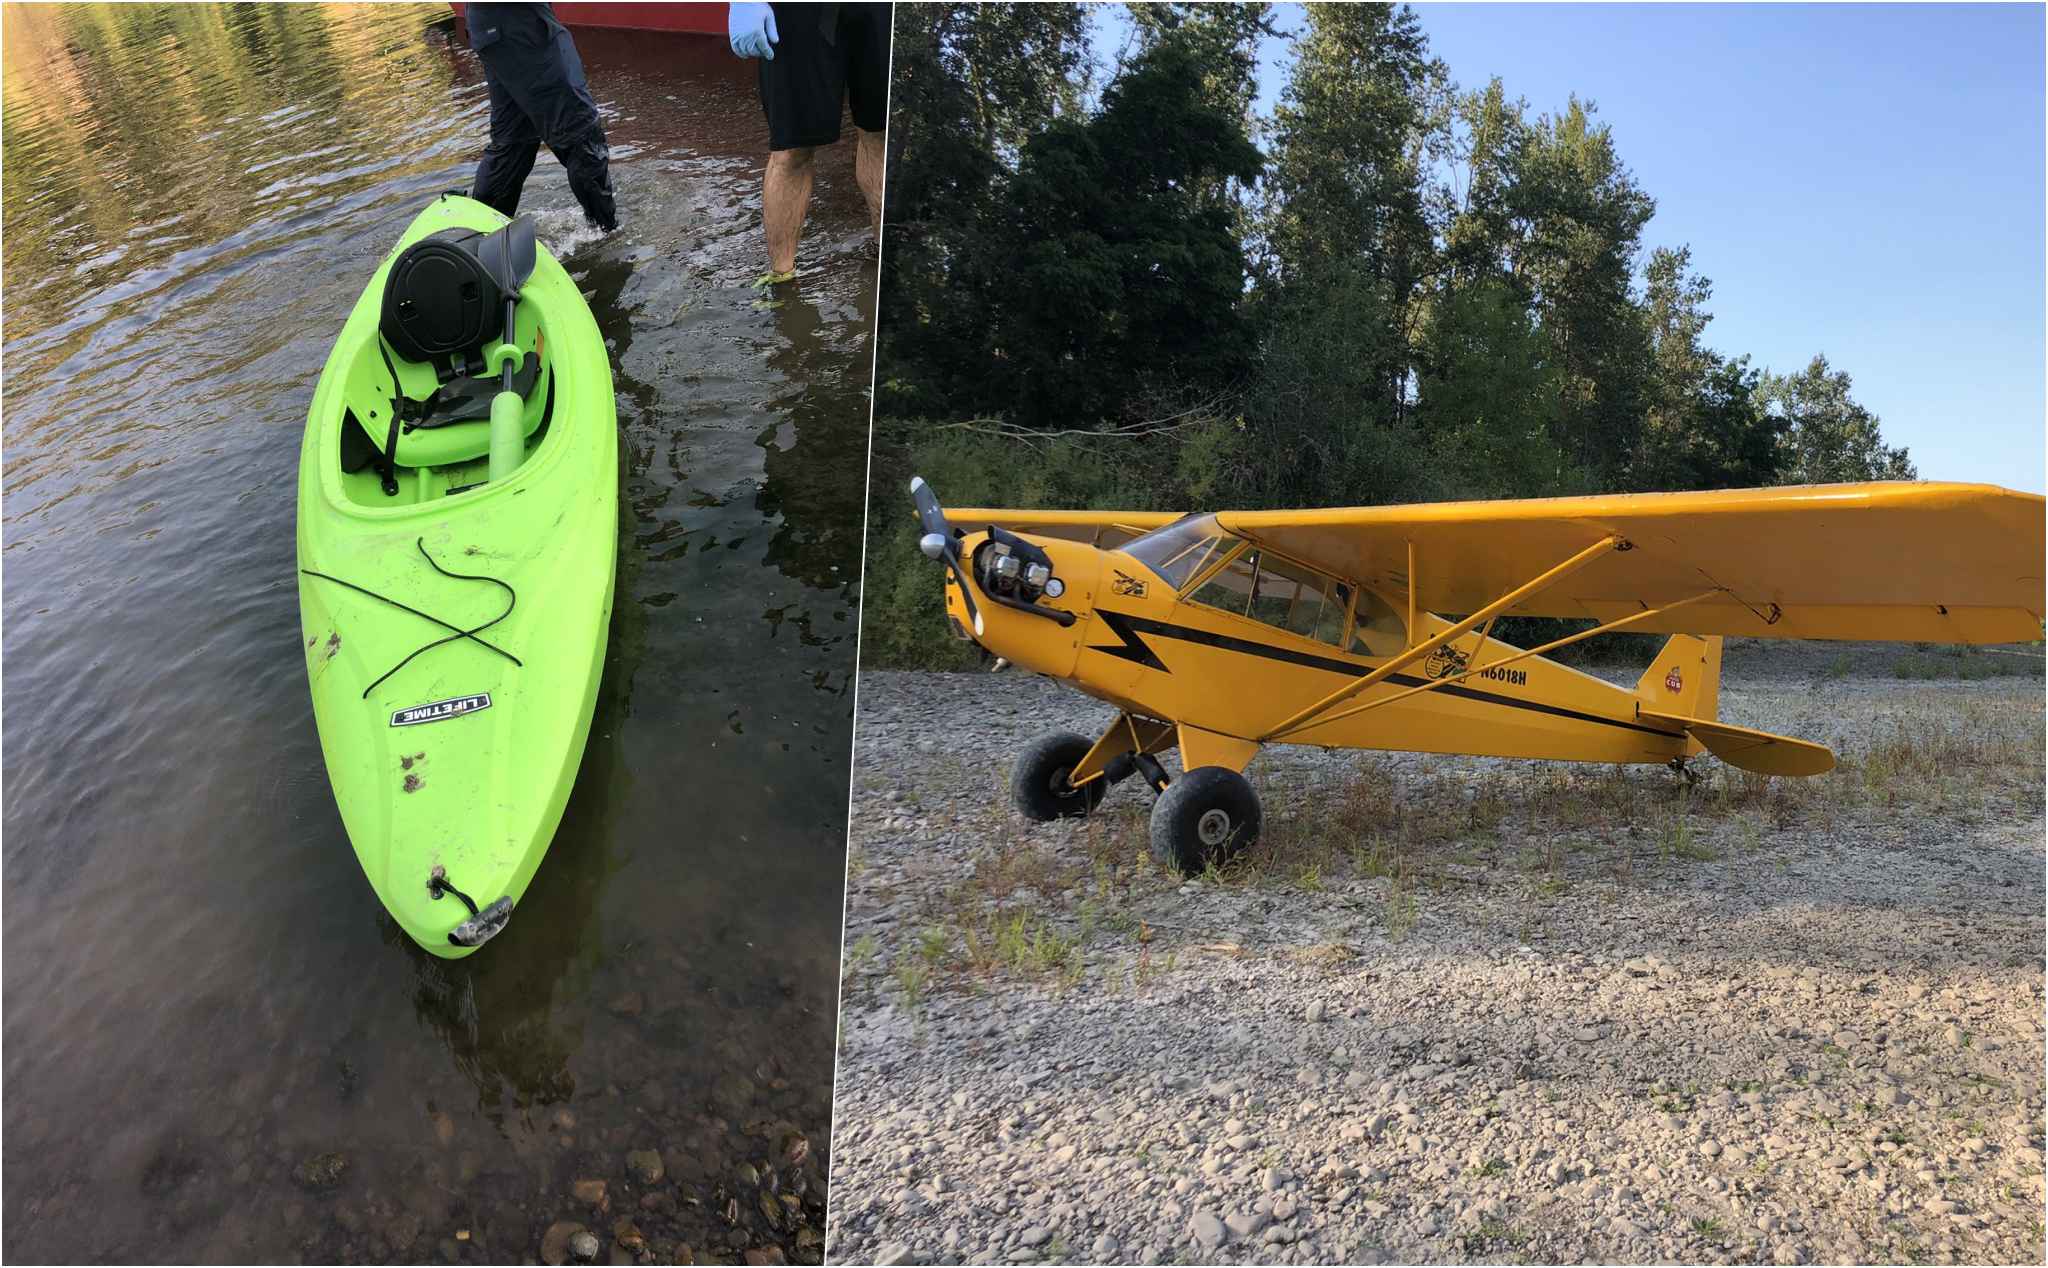 Đang chèo xuồng kayak, một người bị máy bay tông chấn thương nặng